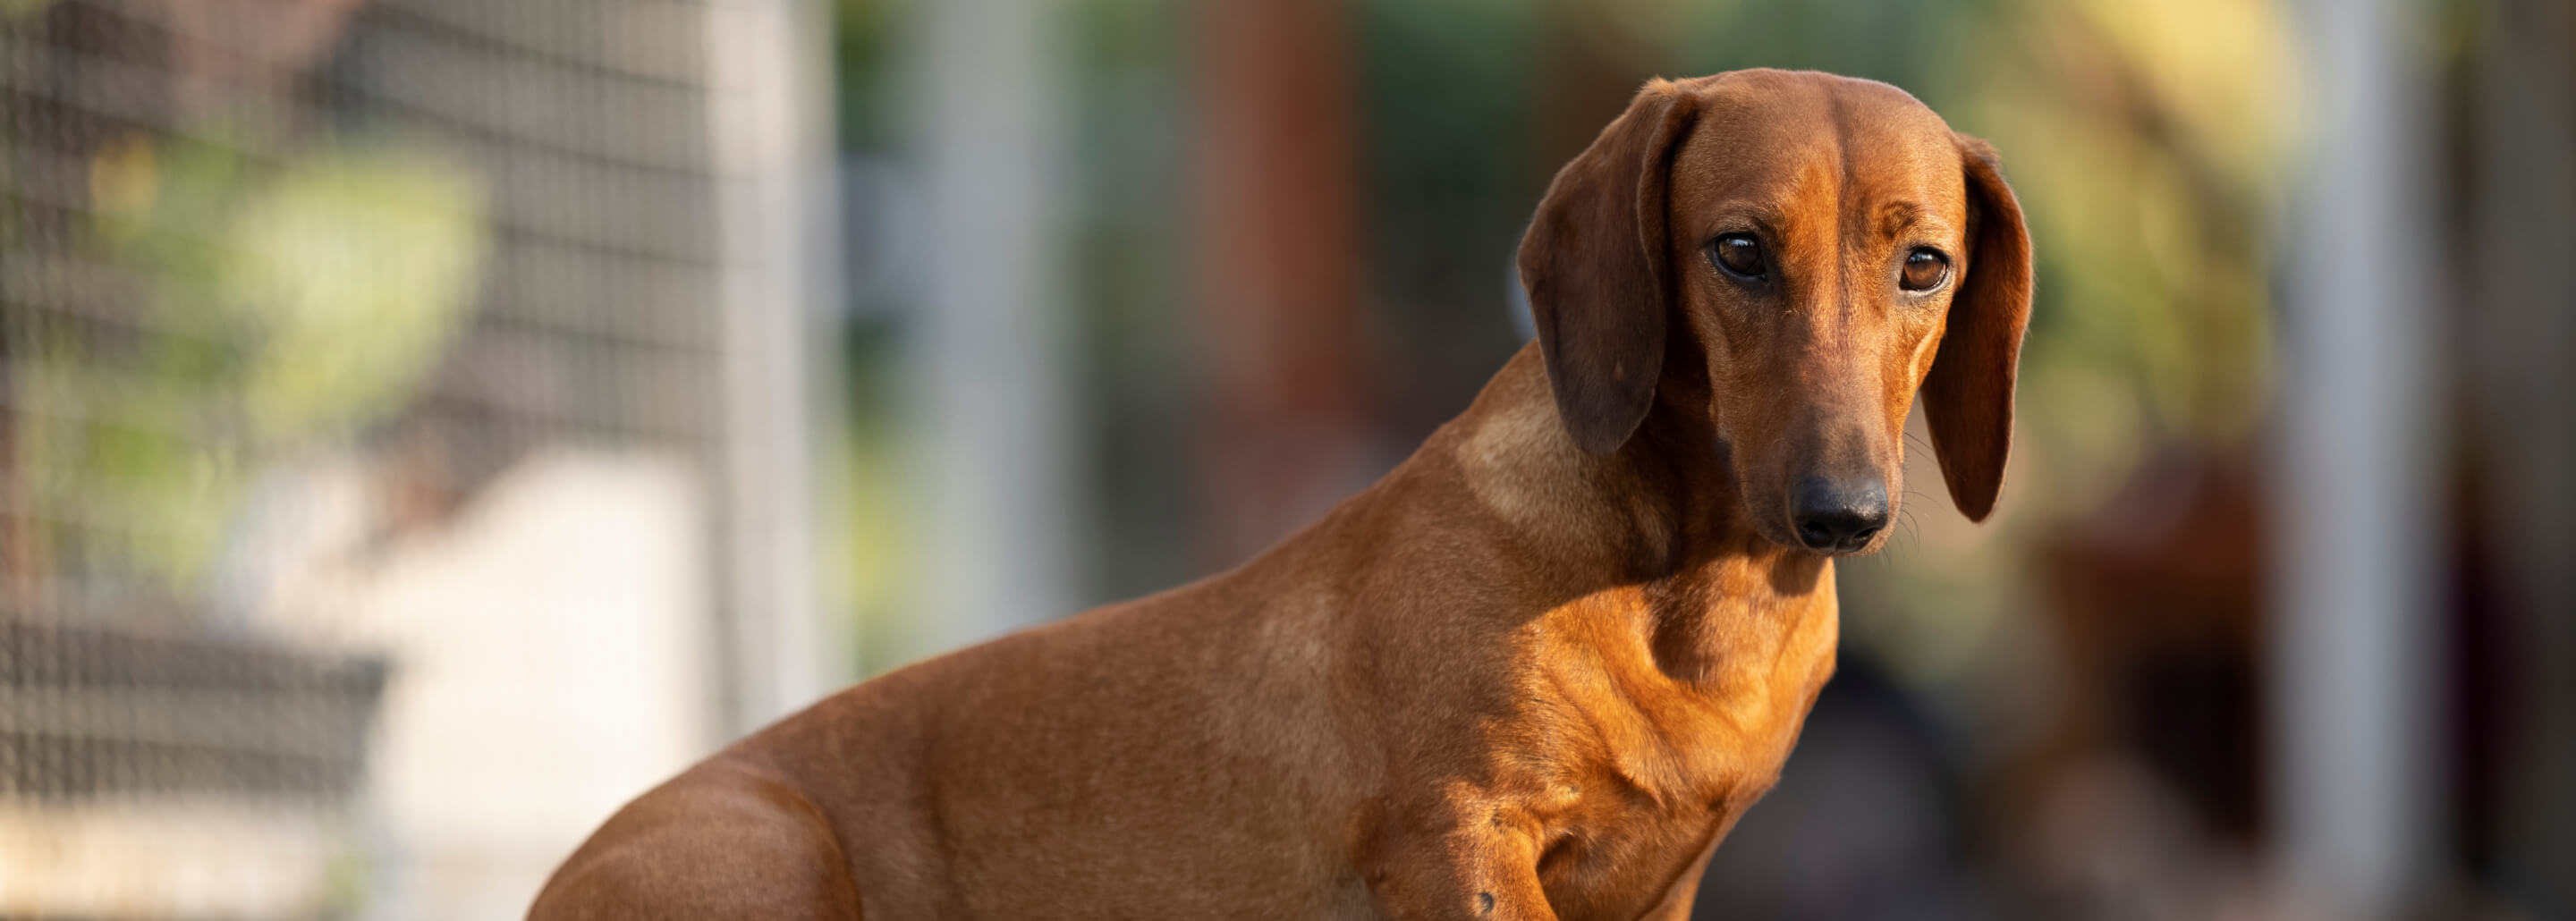 Perros salchicha: todo lo que debe saber sobre alimentación y cuidados -  Mascotas - Vida 